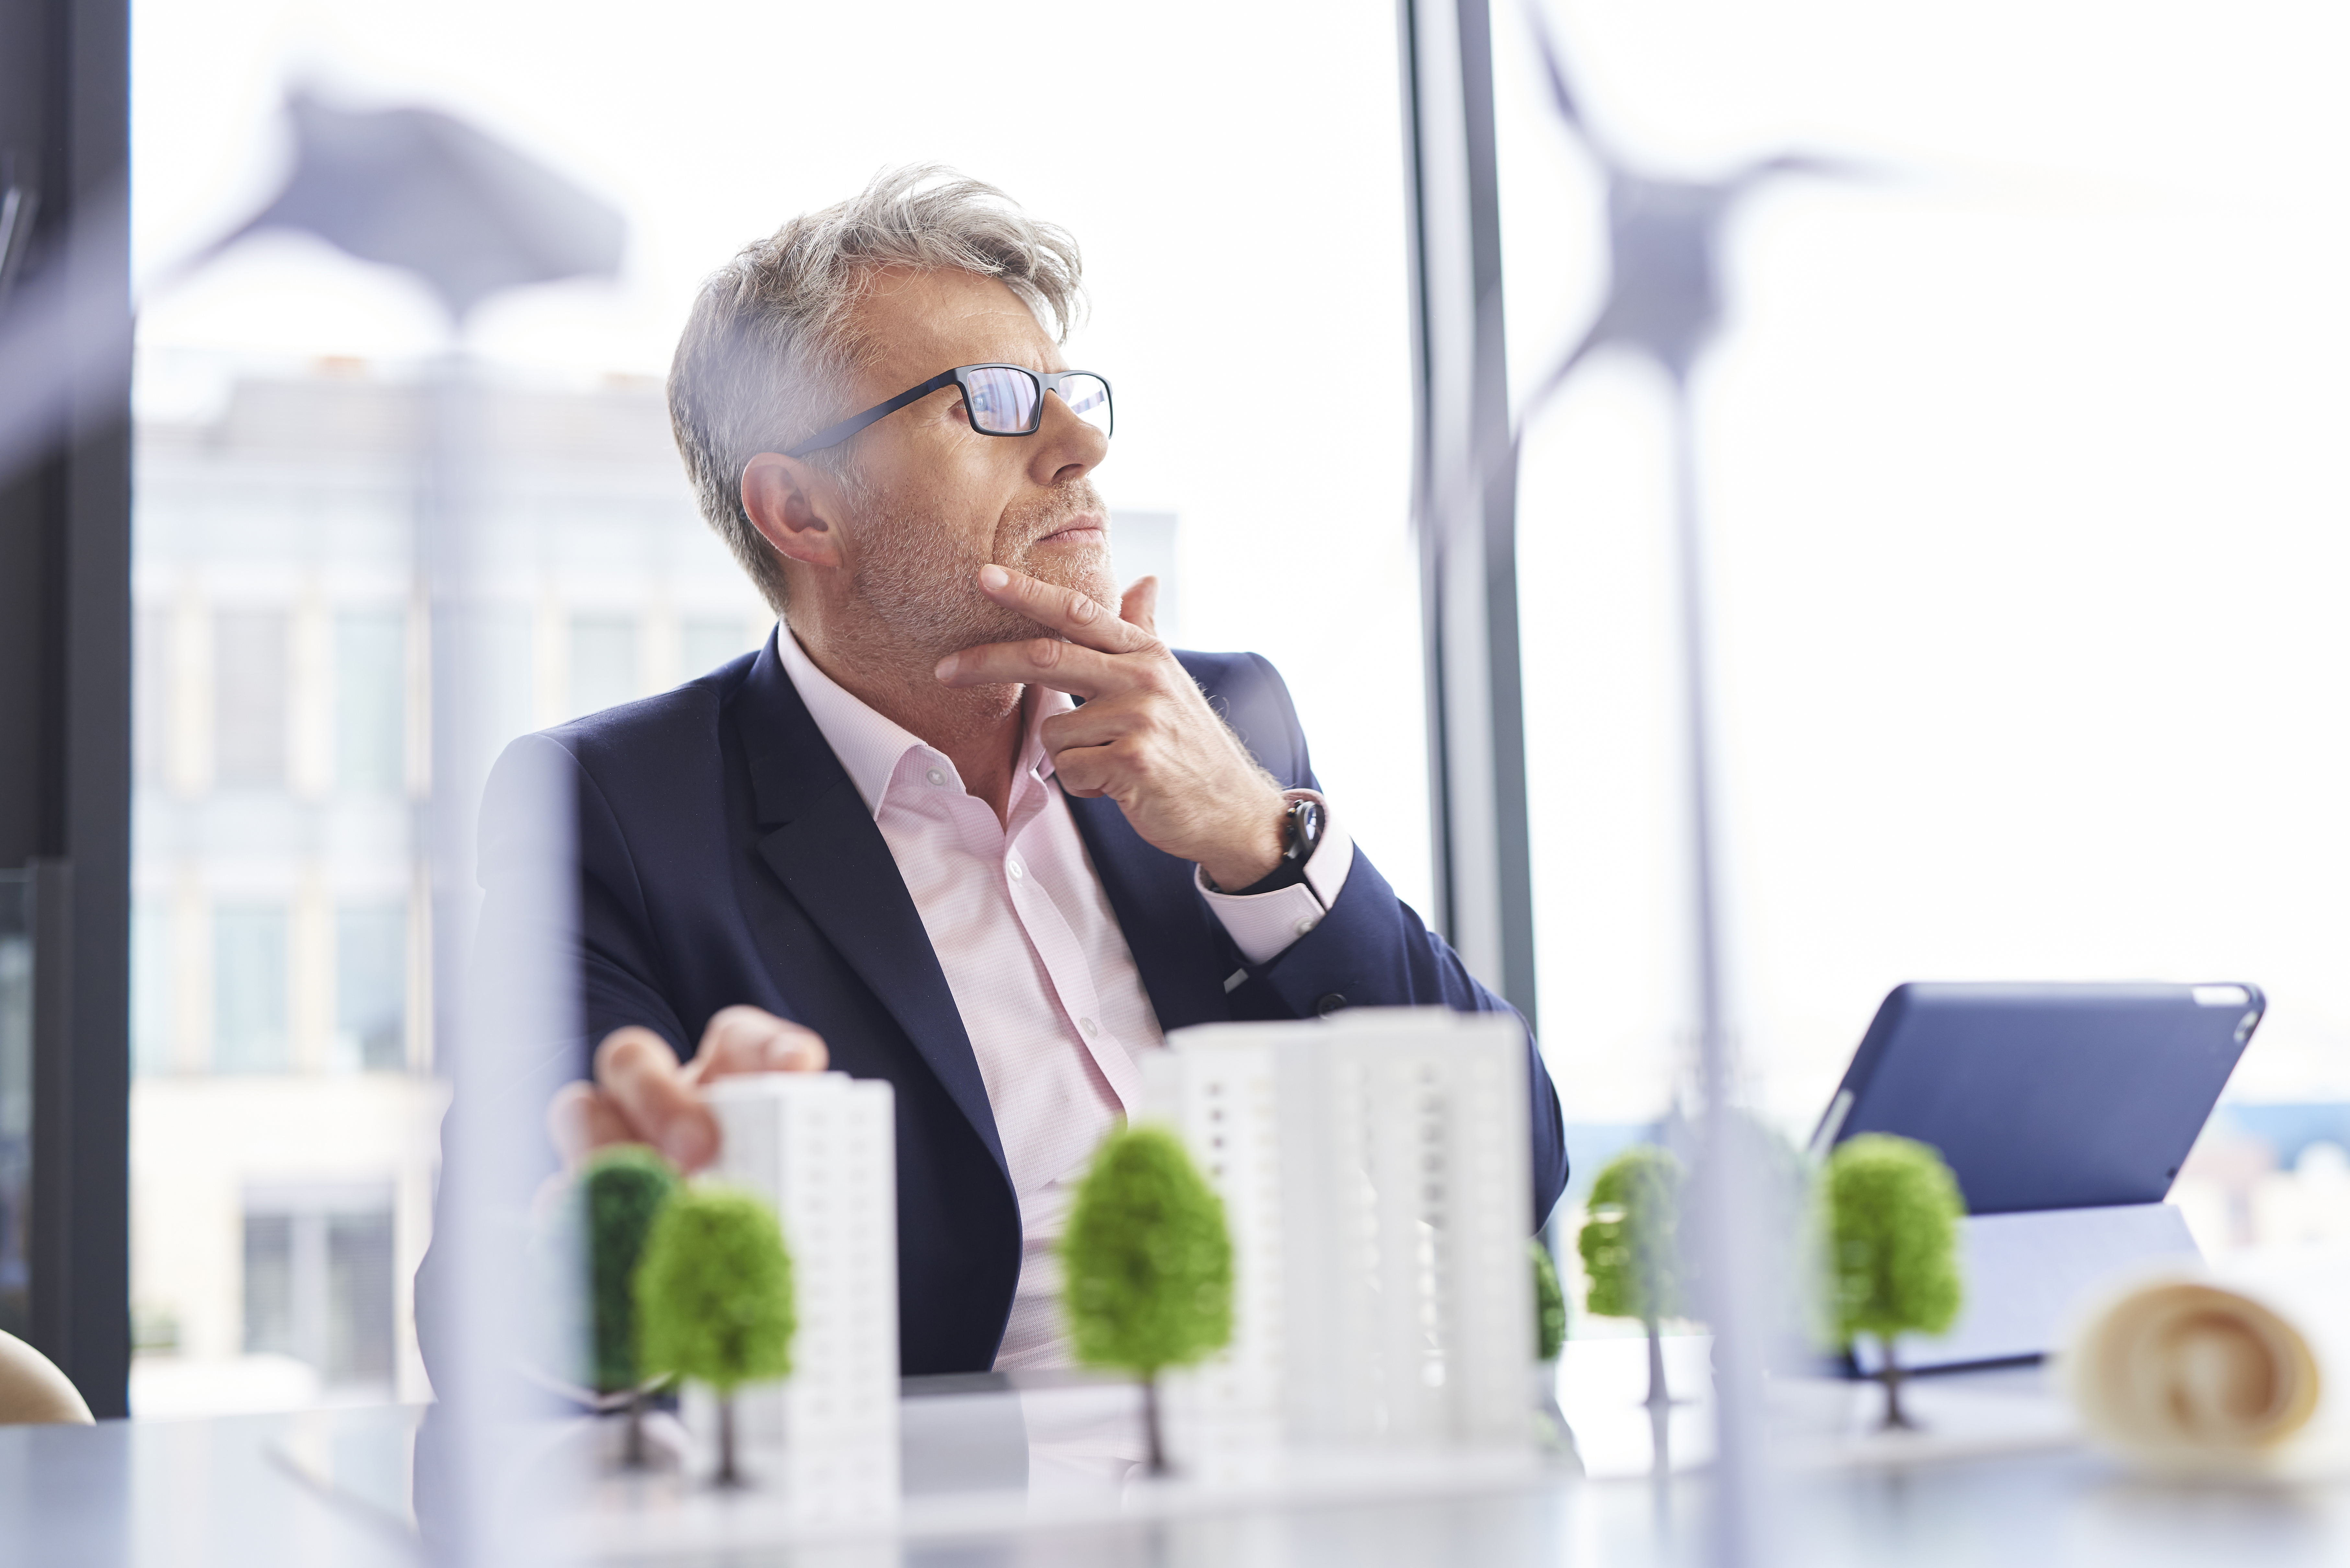 Hombre de negocios ocupado pensando en nuevas soluciones verdes. En la foto aparece el hombre junto a una maqueta de su empresa con árboles.